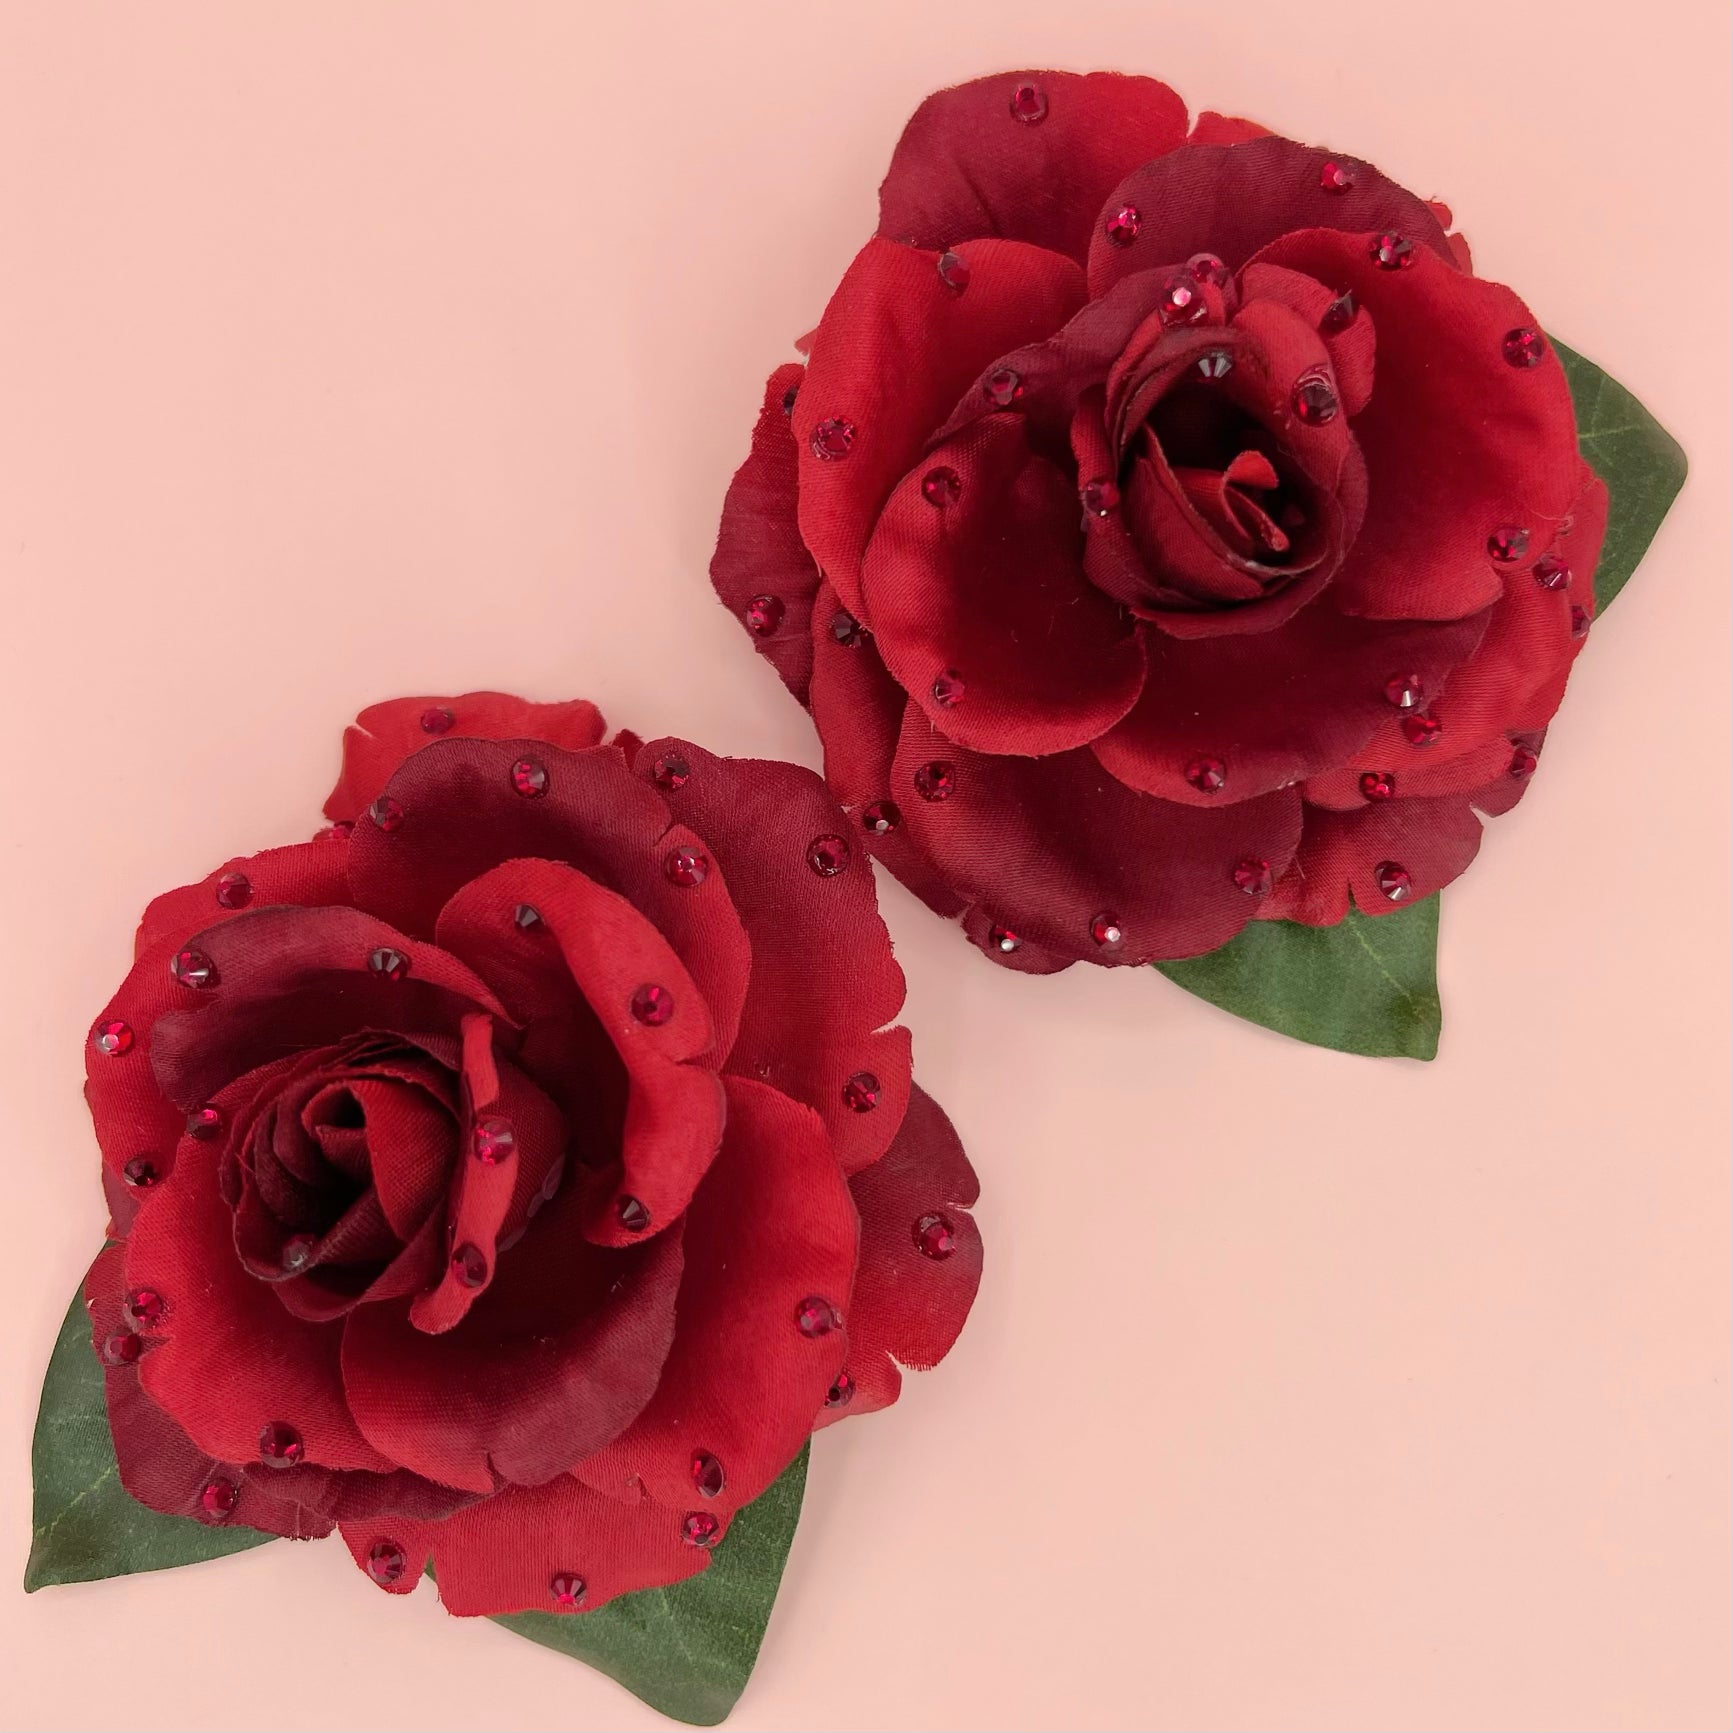 Rose Guapa bundle